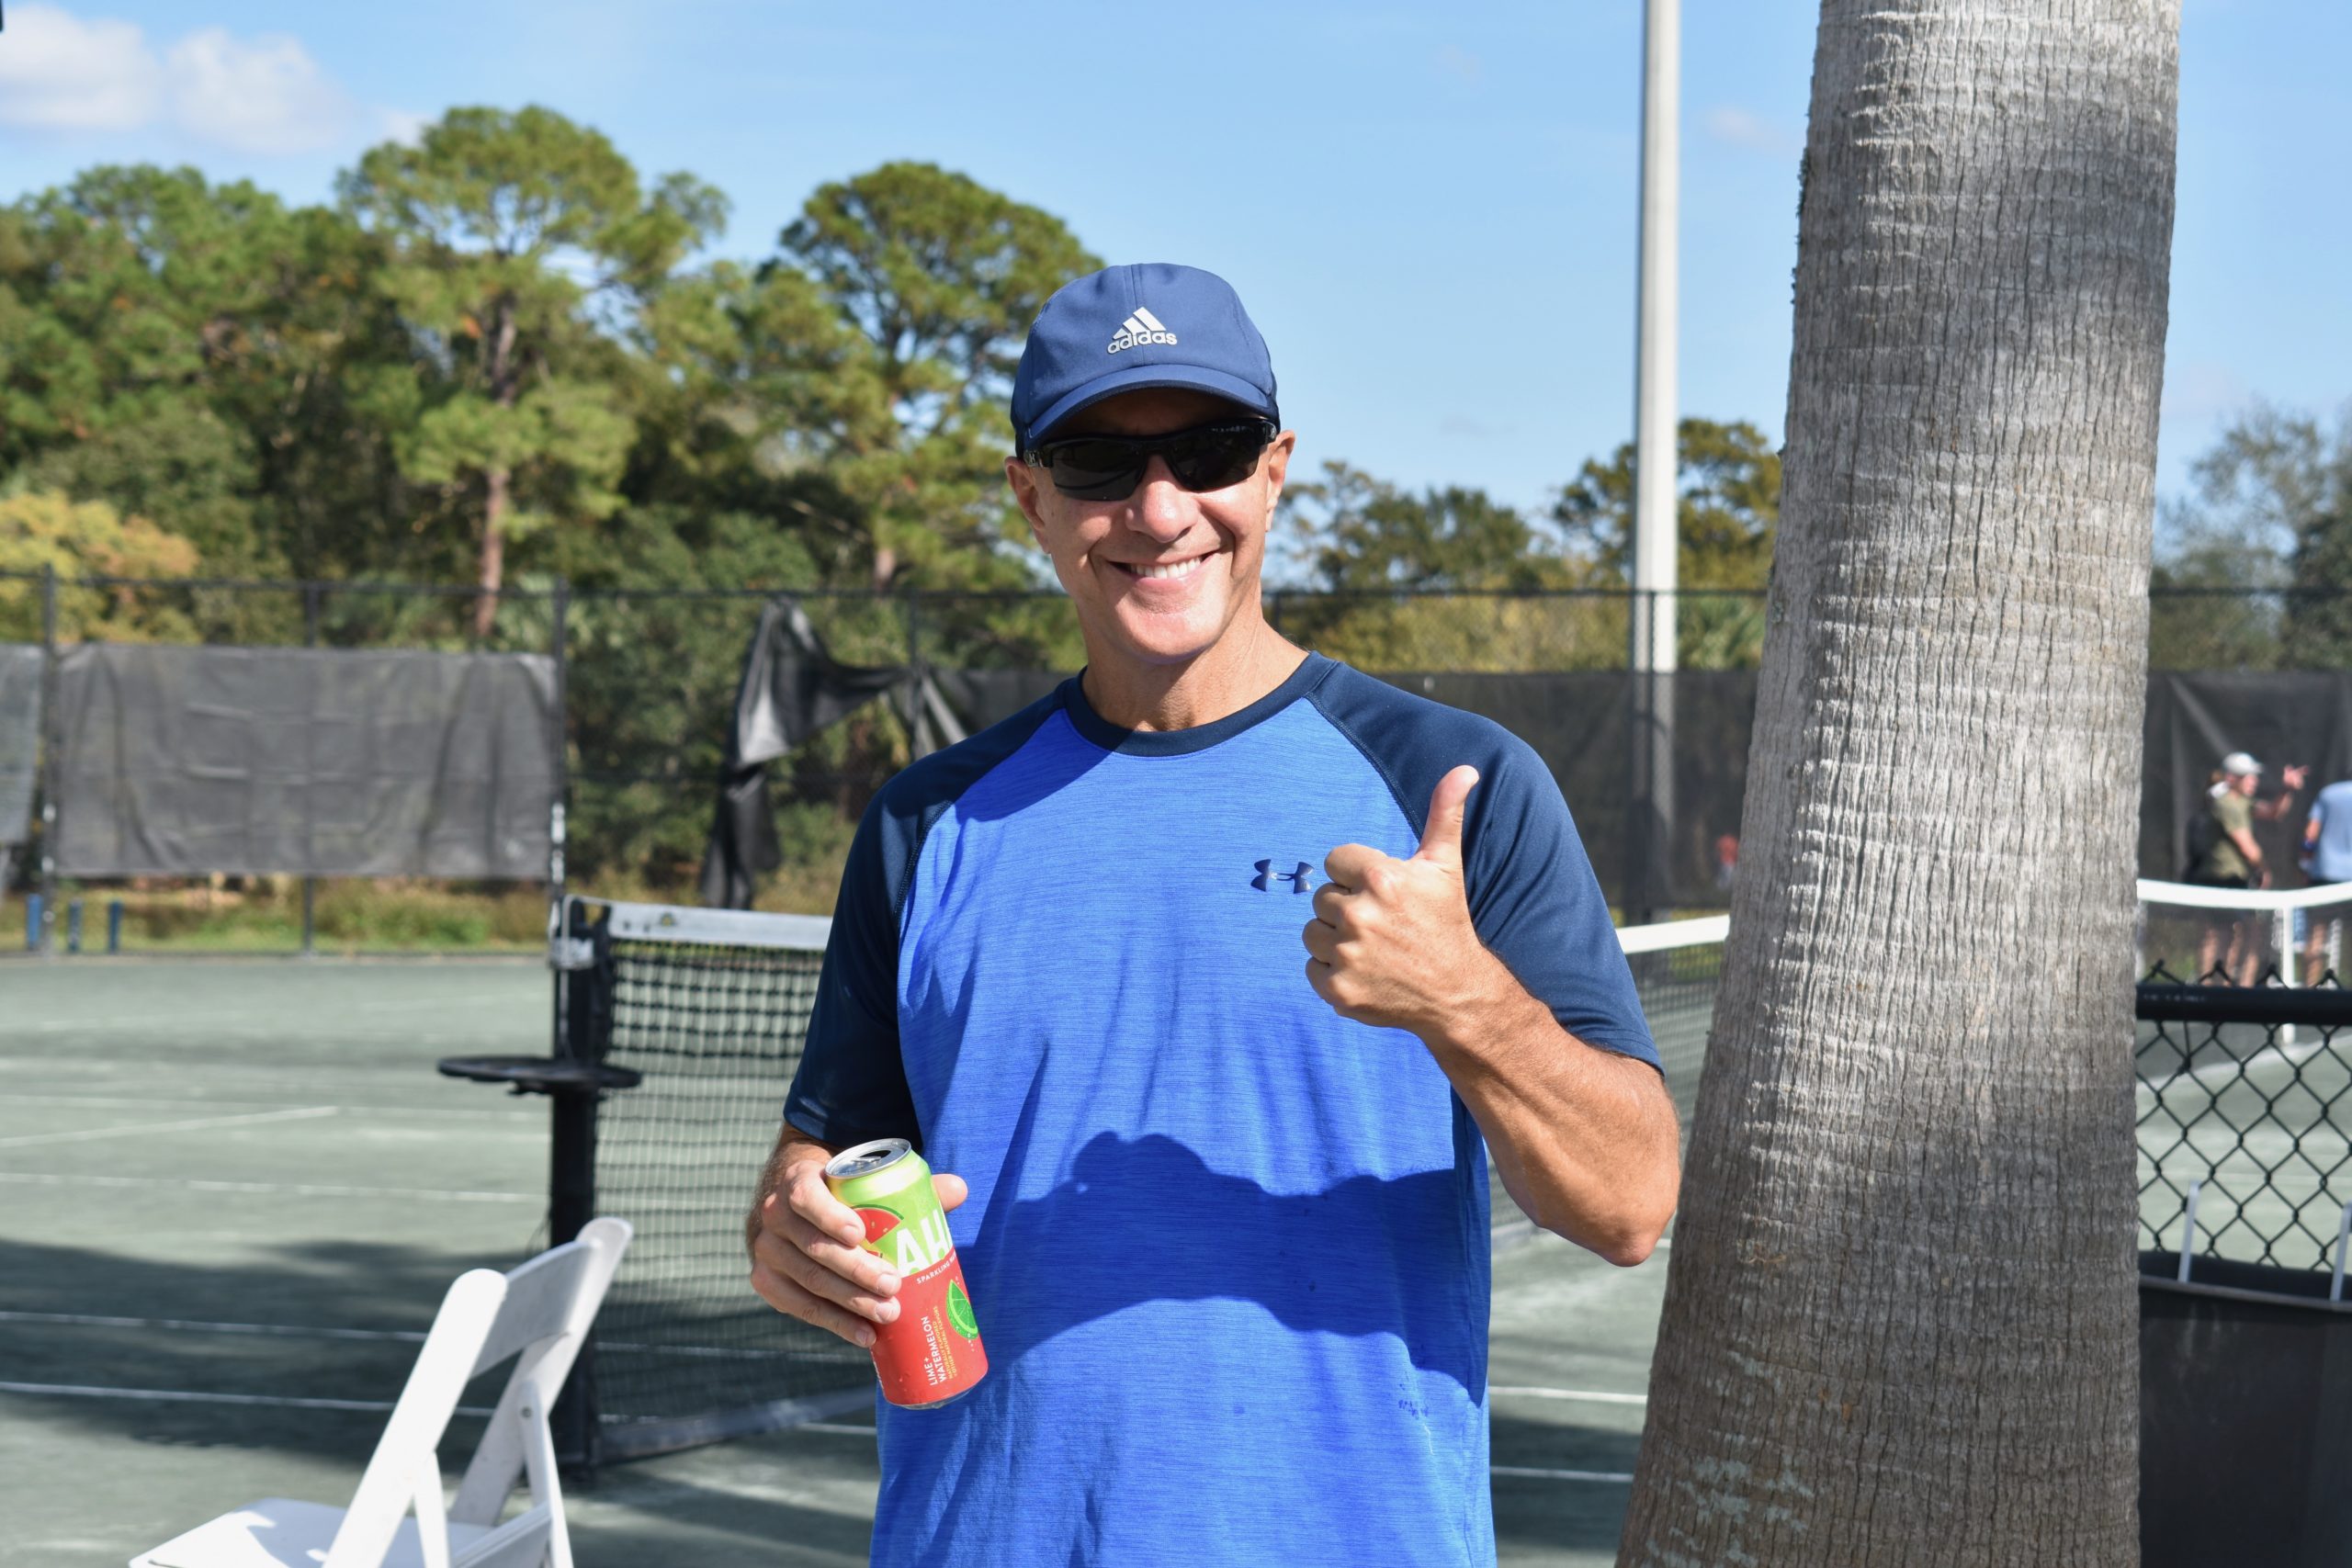 Tennis Fun-Raiser participant gives a thumbs up